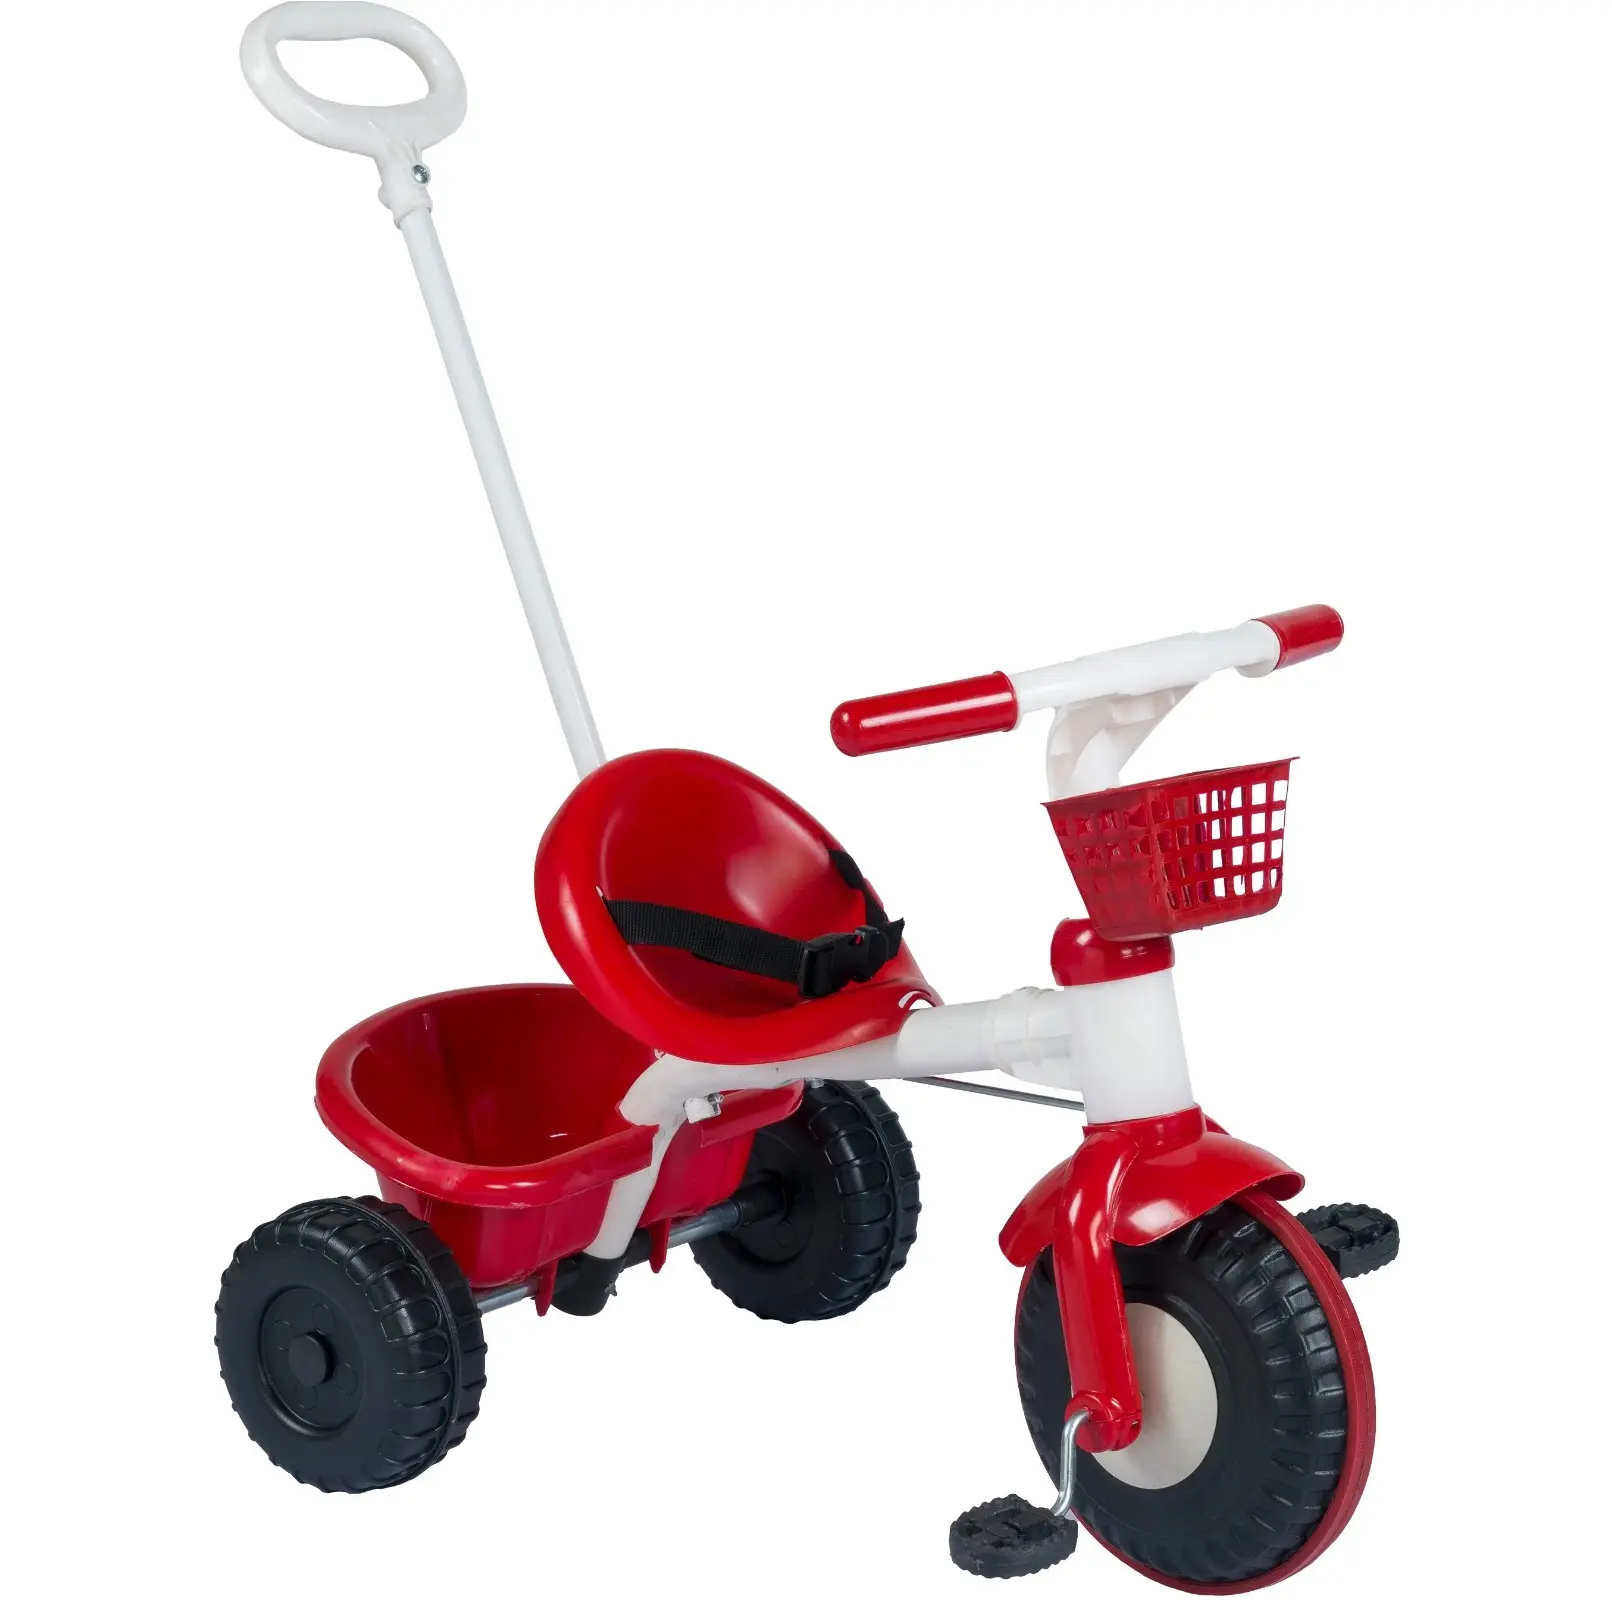 Triciclo de empuje para niños, coche de juguete rojo para bebés, bicicleta de plástico barata, de 3 ruedas de empuje, bicicletas de Control Parental